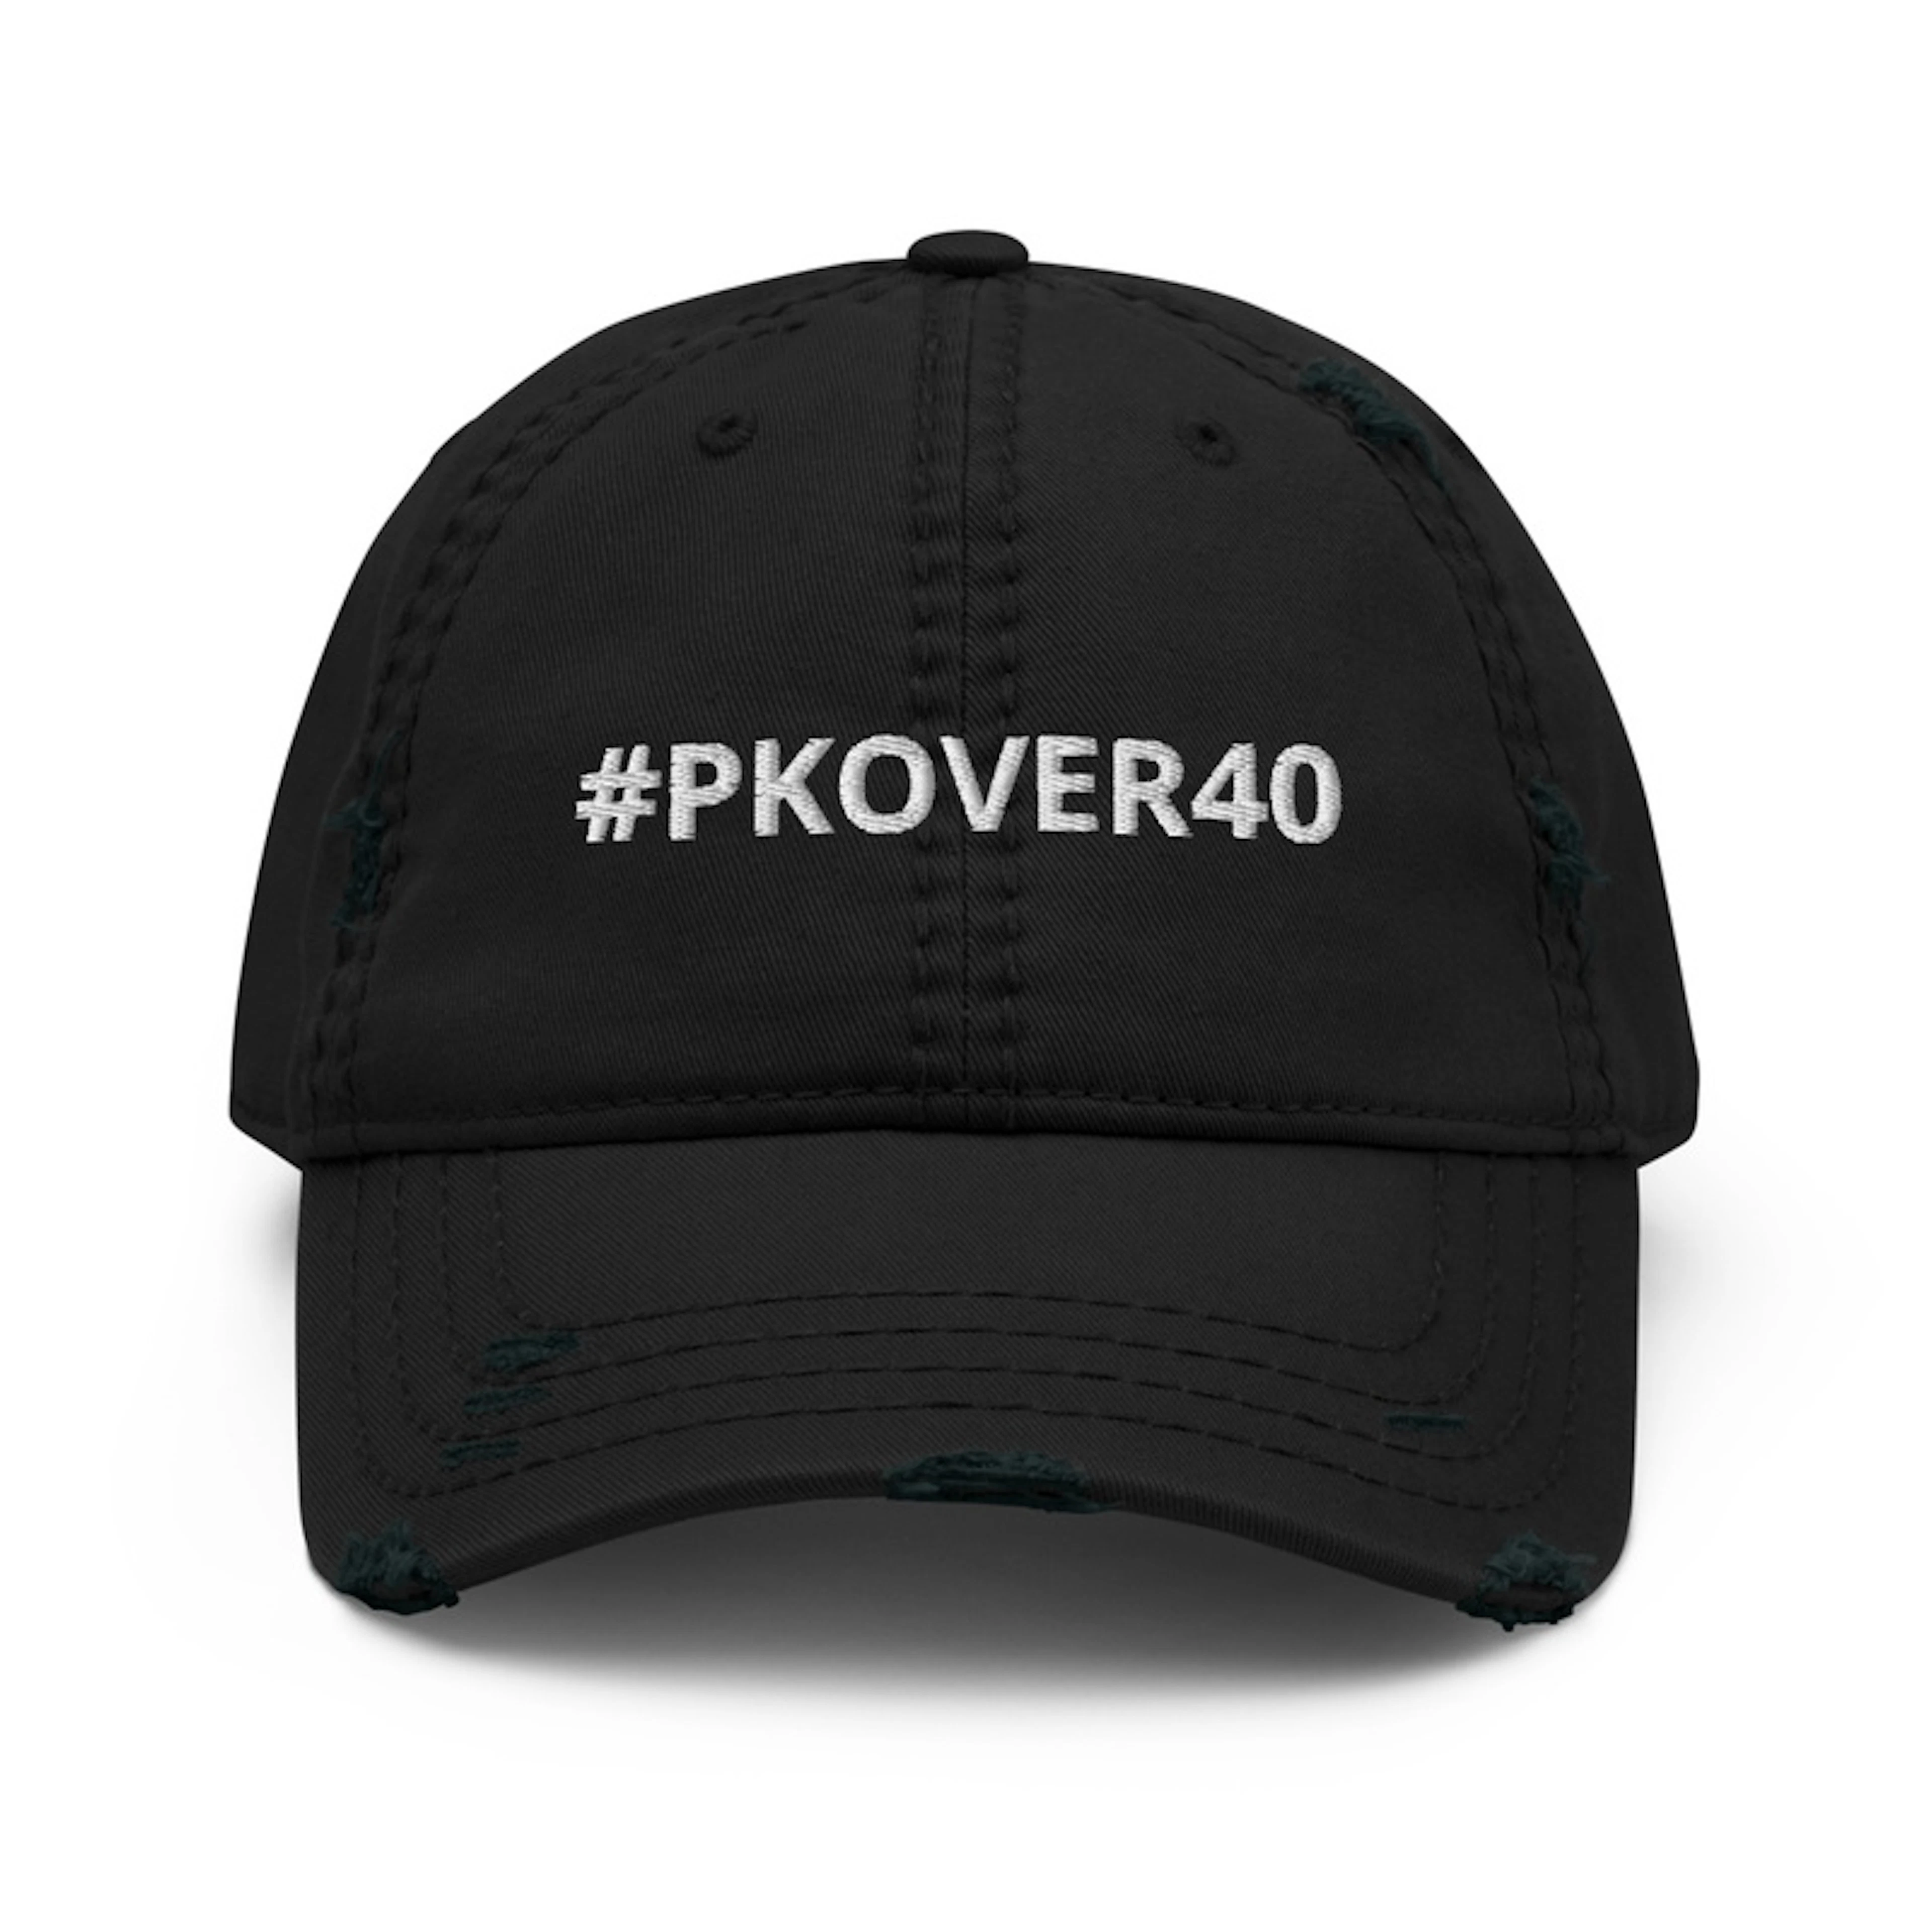 PKOVER40 DAD HAT